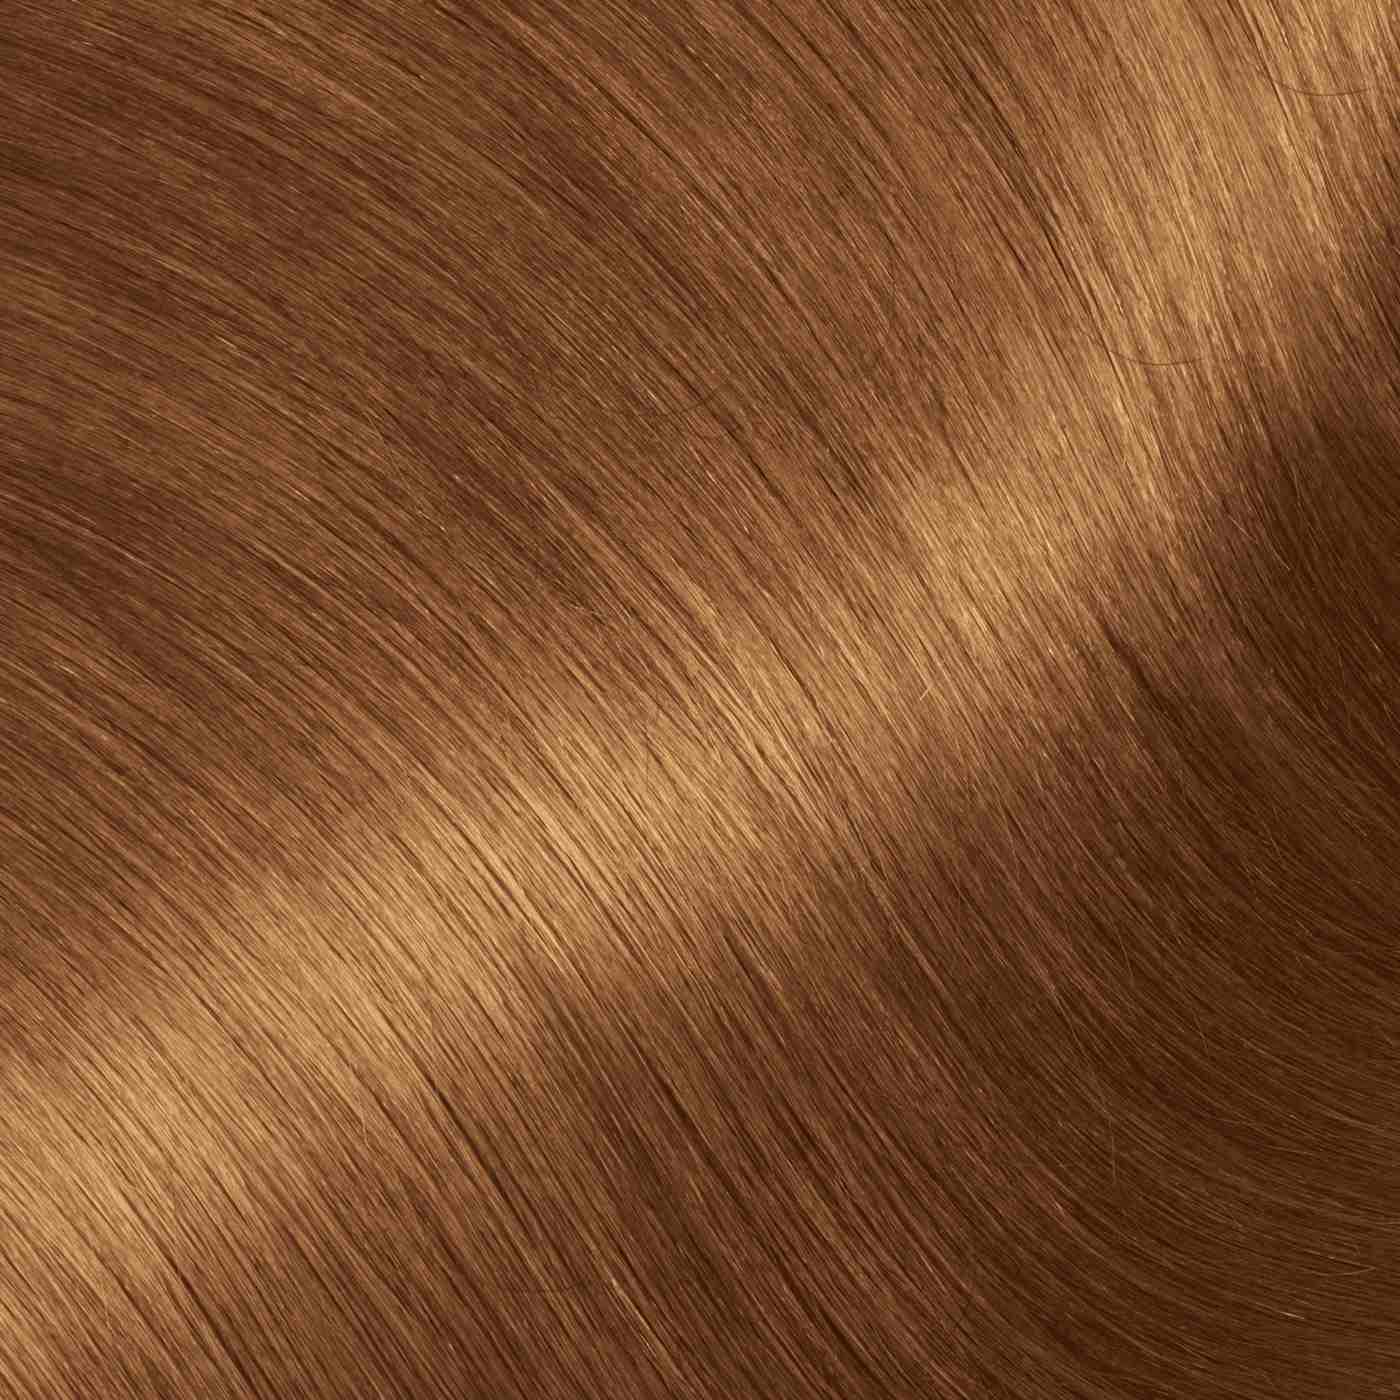 Garnier Nutrisse Ultra Color Nourishing Bold Permanent Hair Color Creme B3 Golden Brown; image 5 of 10